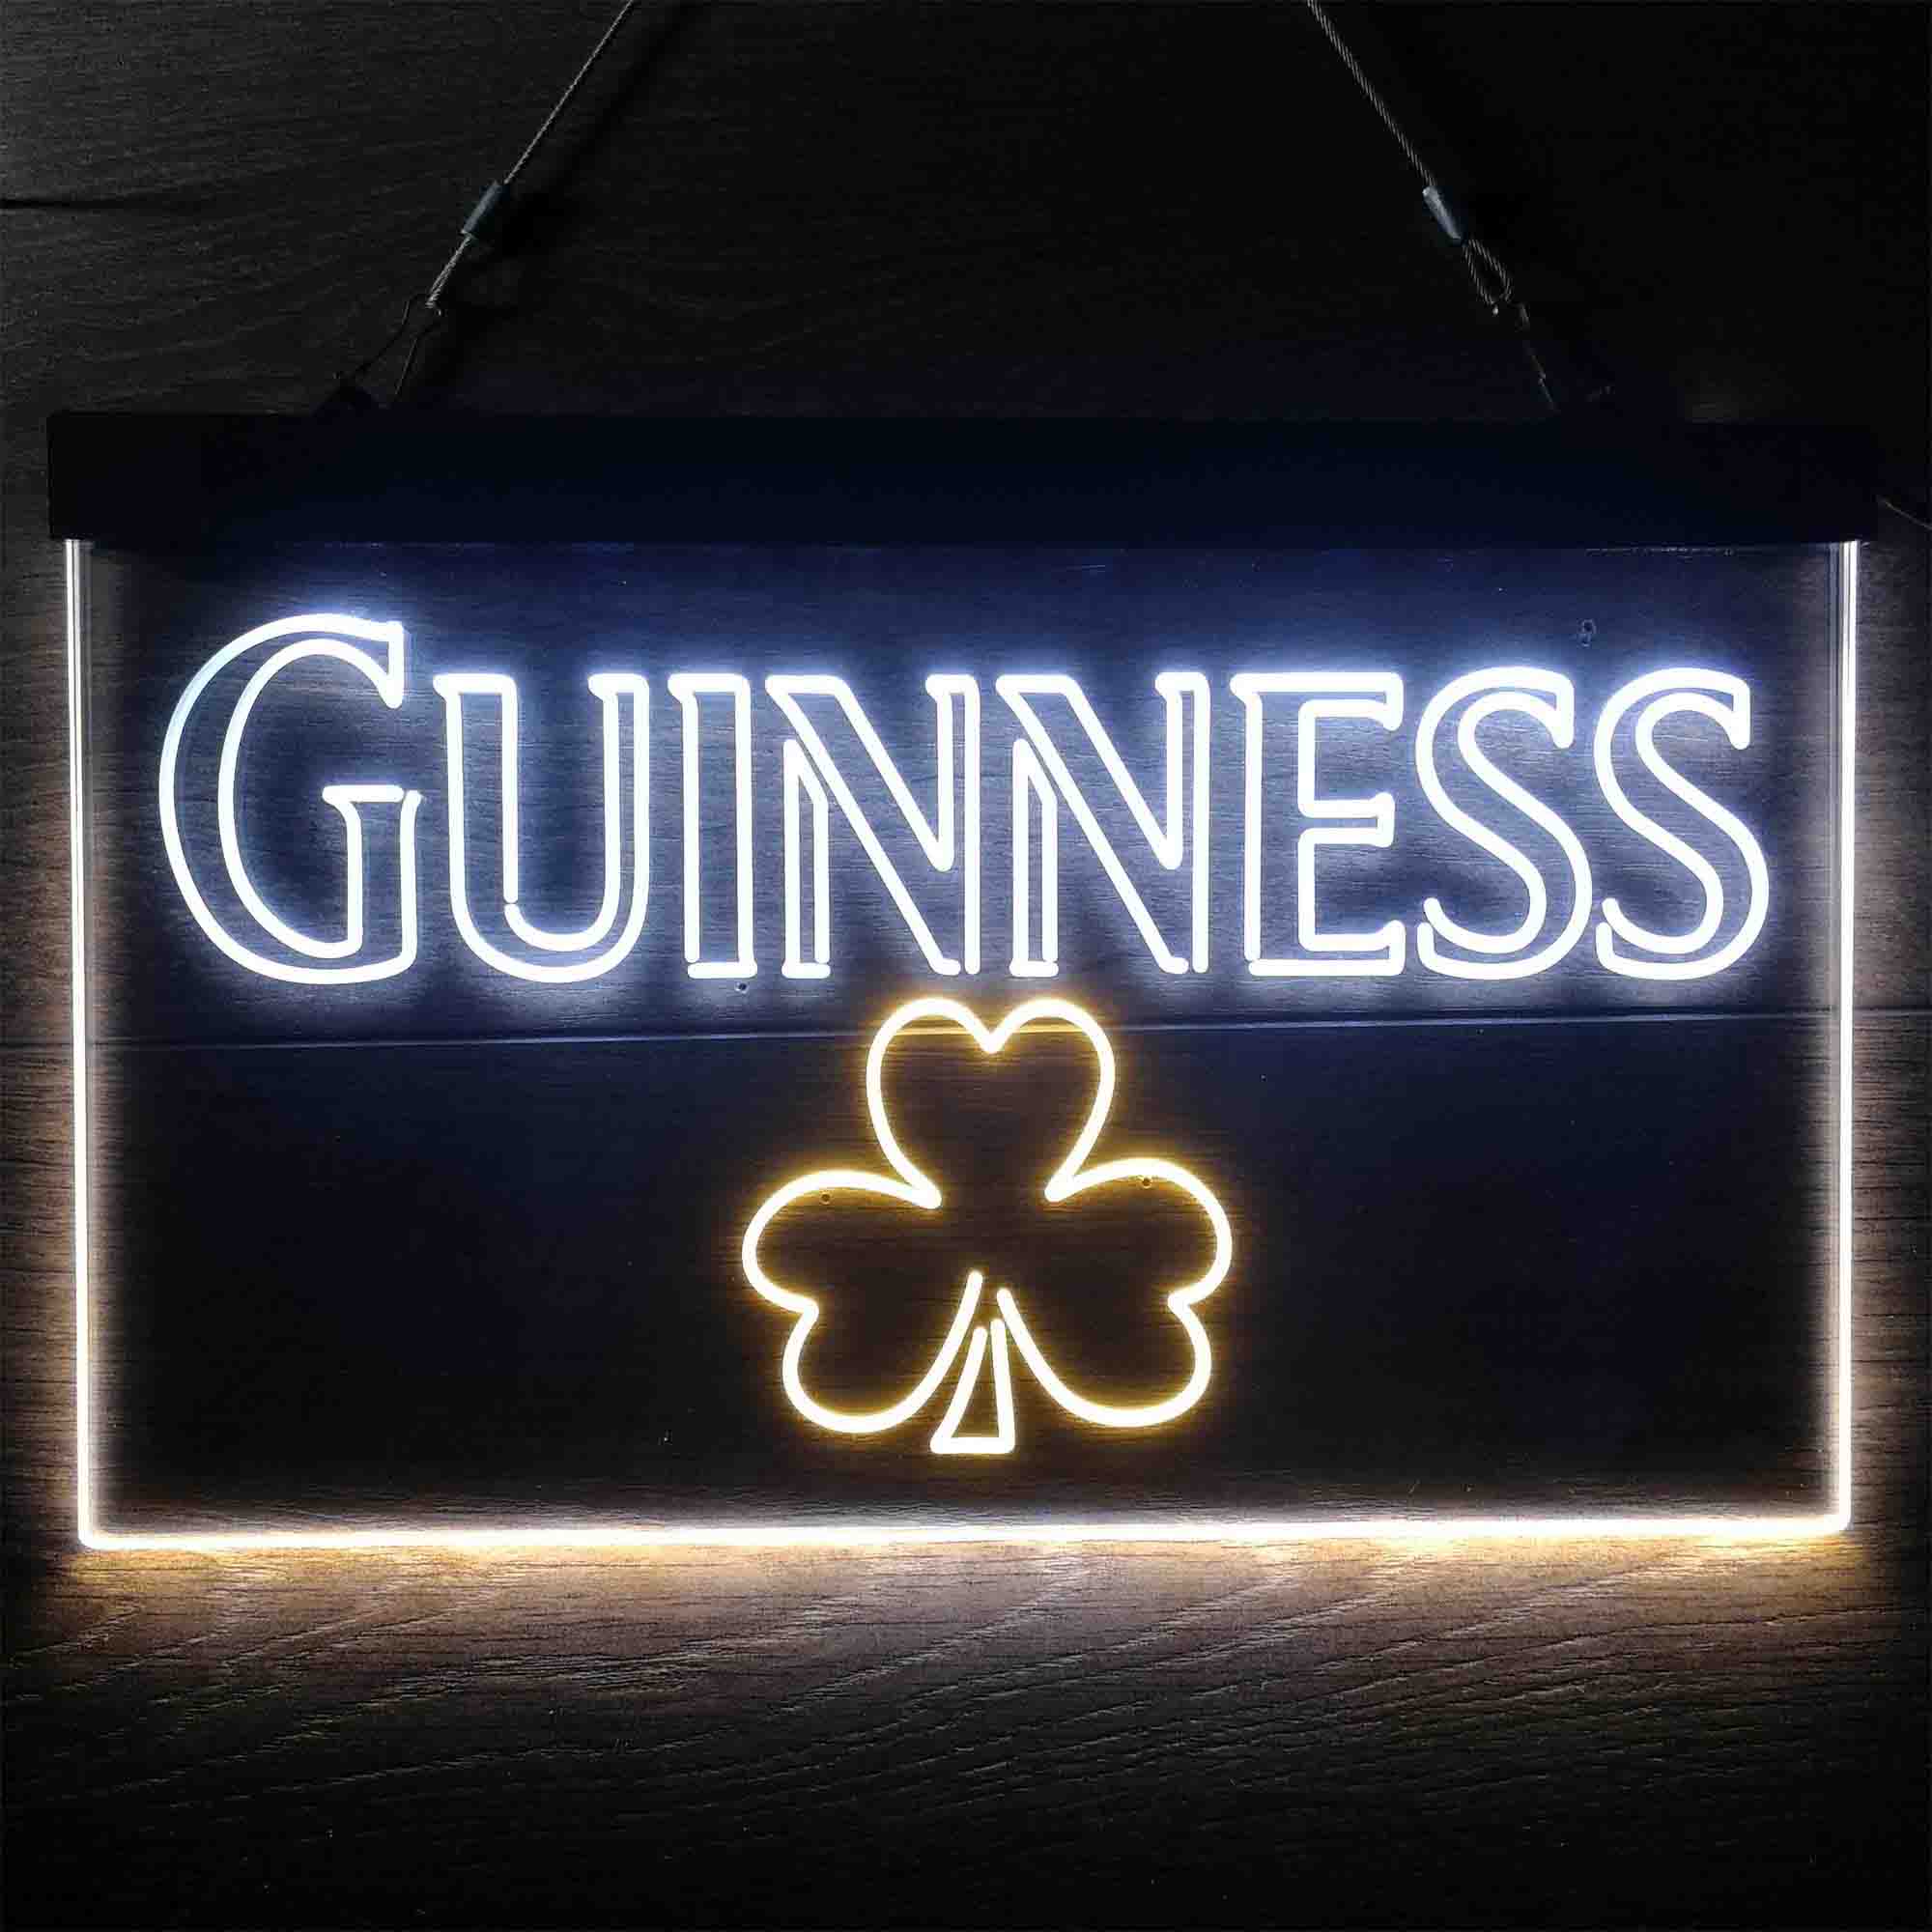 Guinness Guinness Print Beer Neon-Like LED Sign